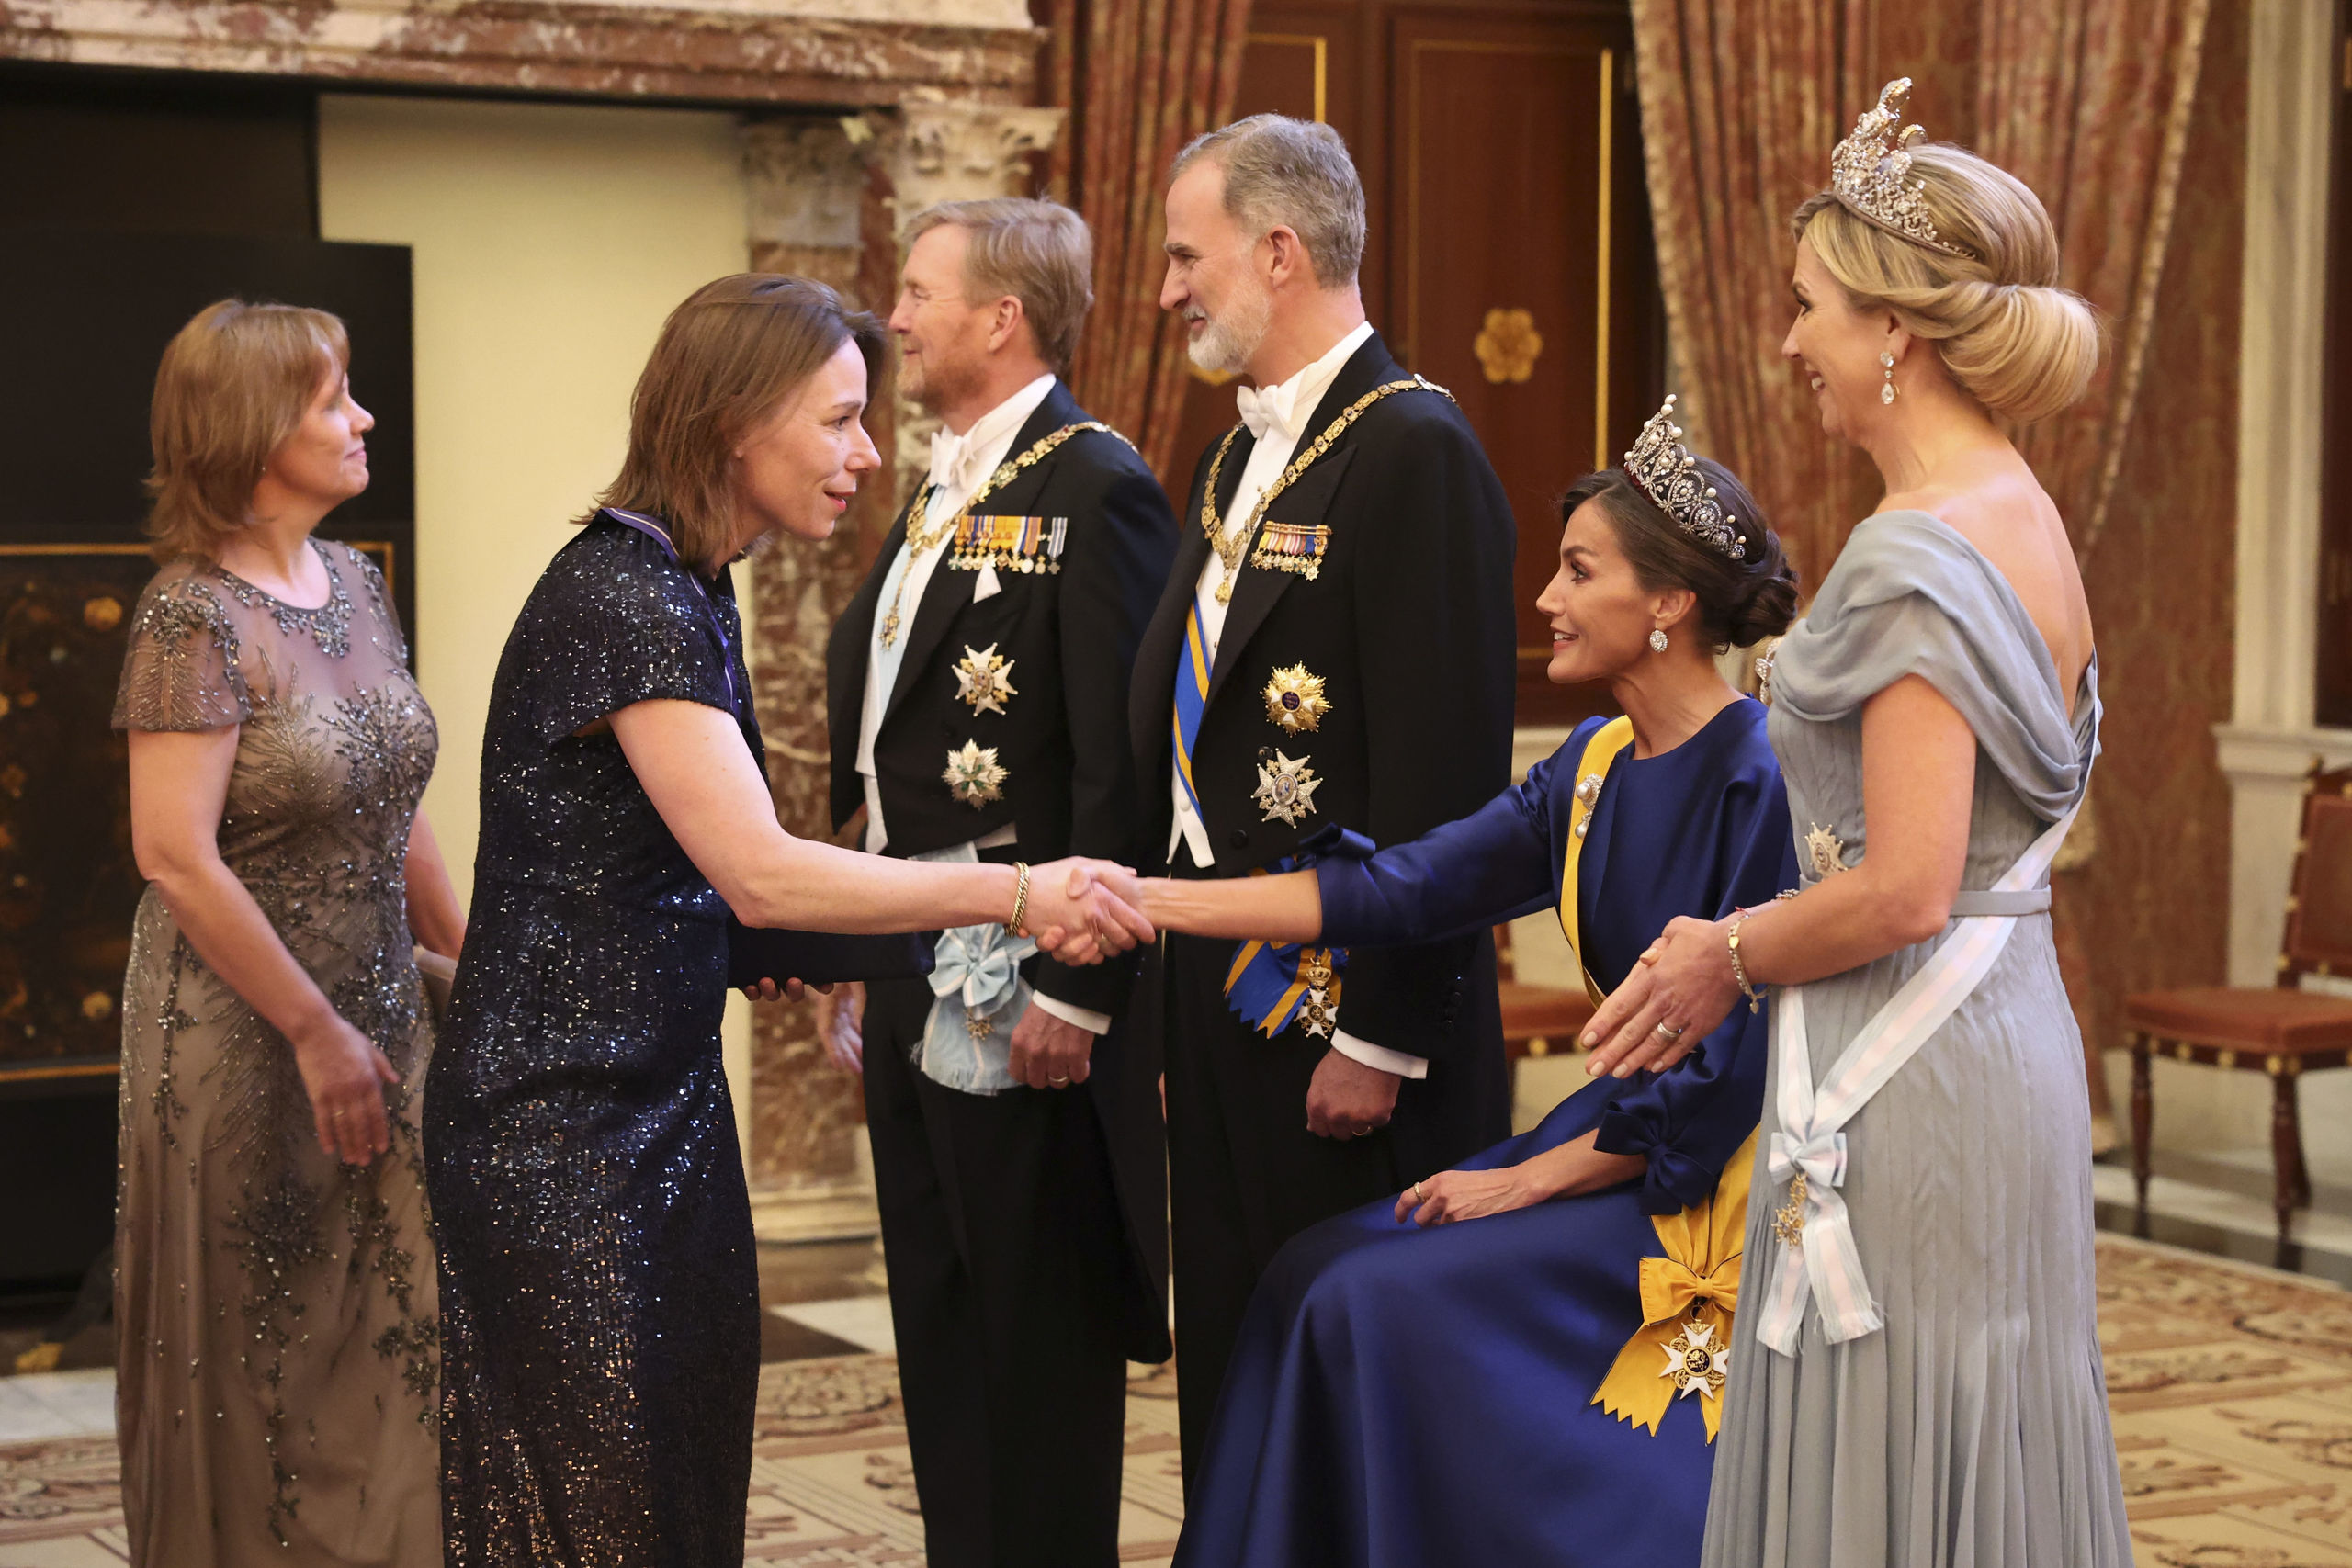 La reina Letizia, obligada a sentarse en el besamanos de la recepción en Ámsterdam